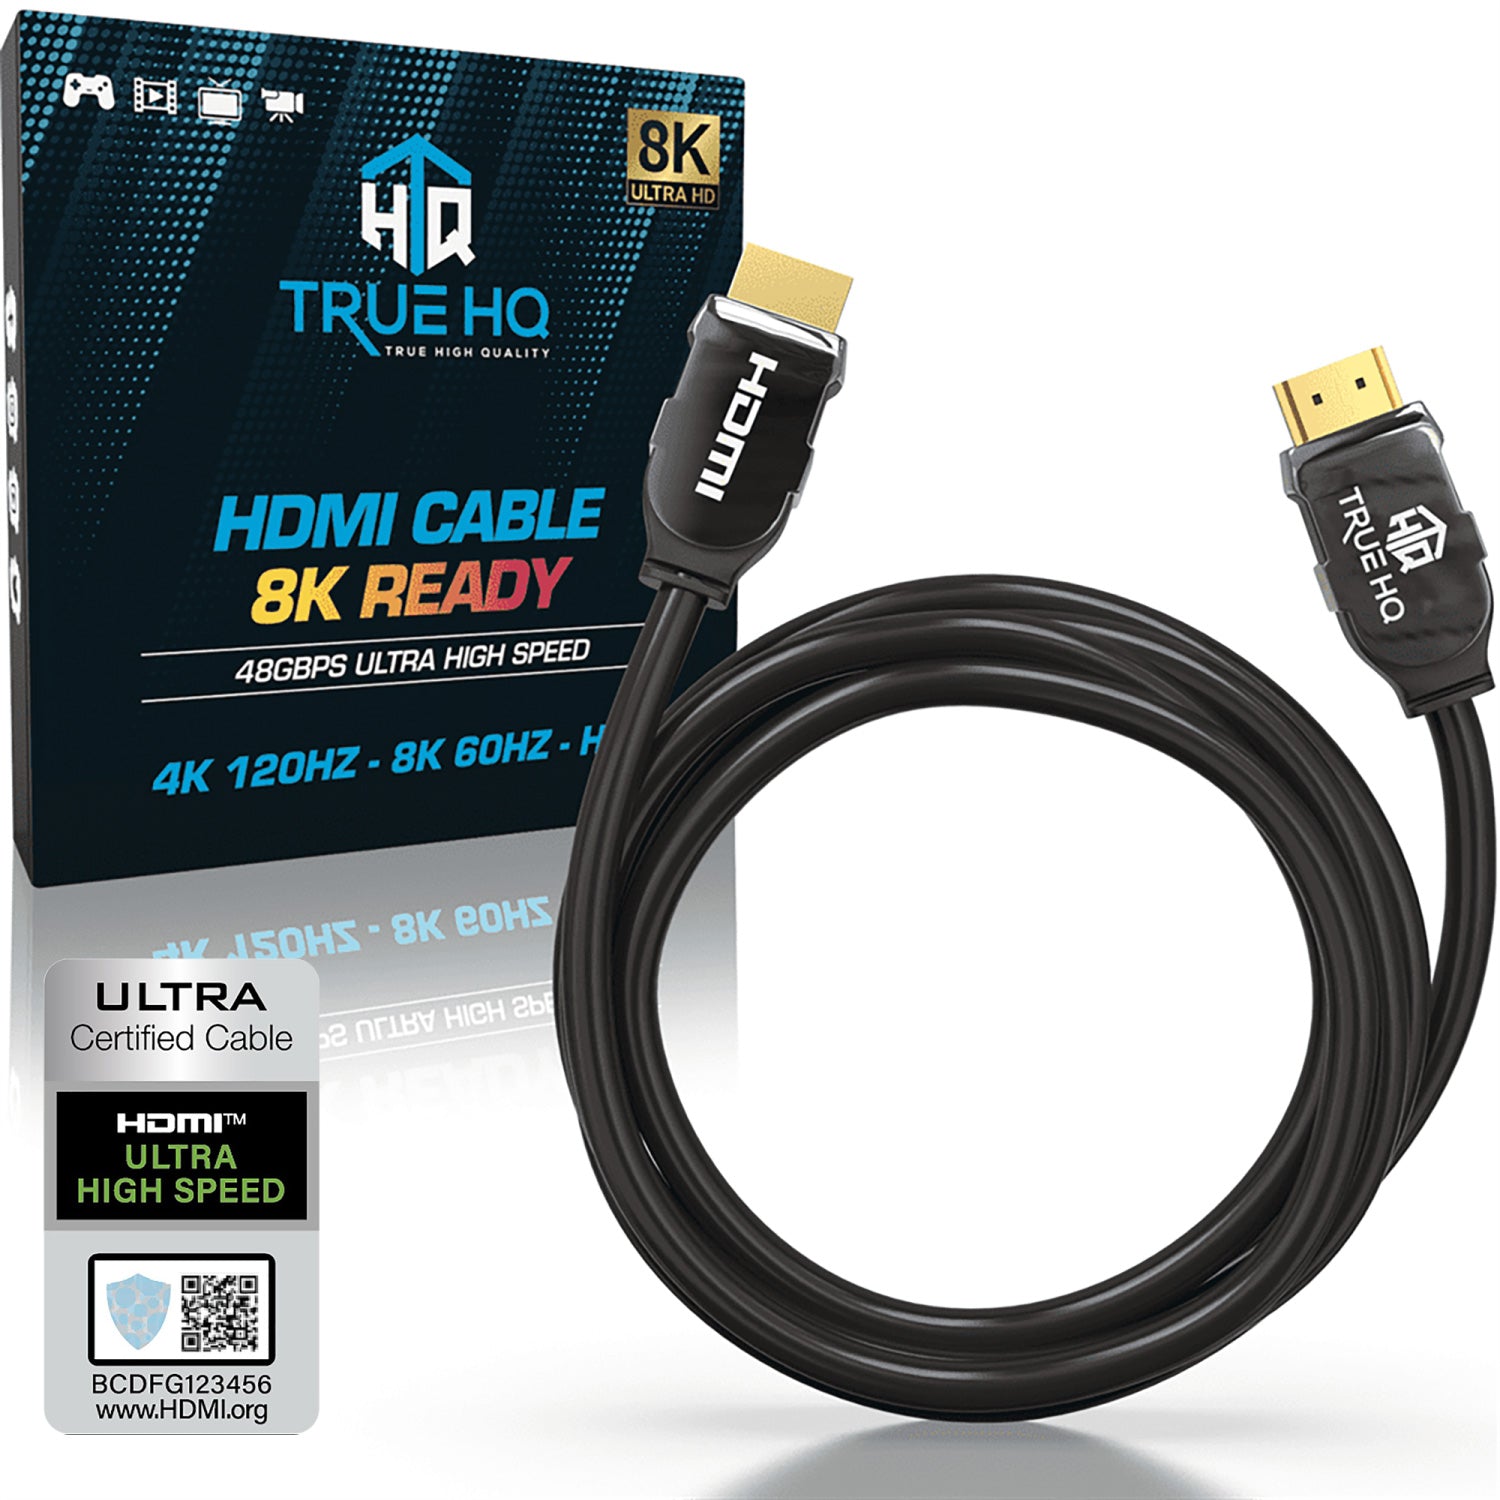 https://truehq.co.uk/cdn/shop/products/3M-HDMI-2.1-Certified_2000x.jpg?v=1641404913